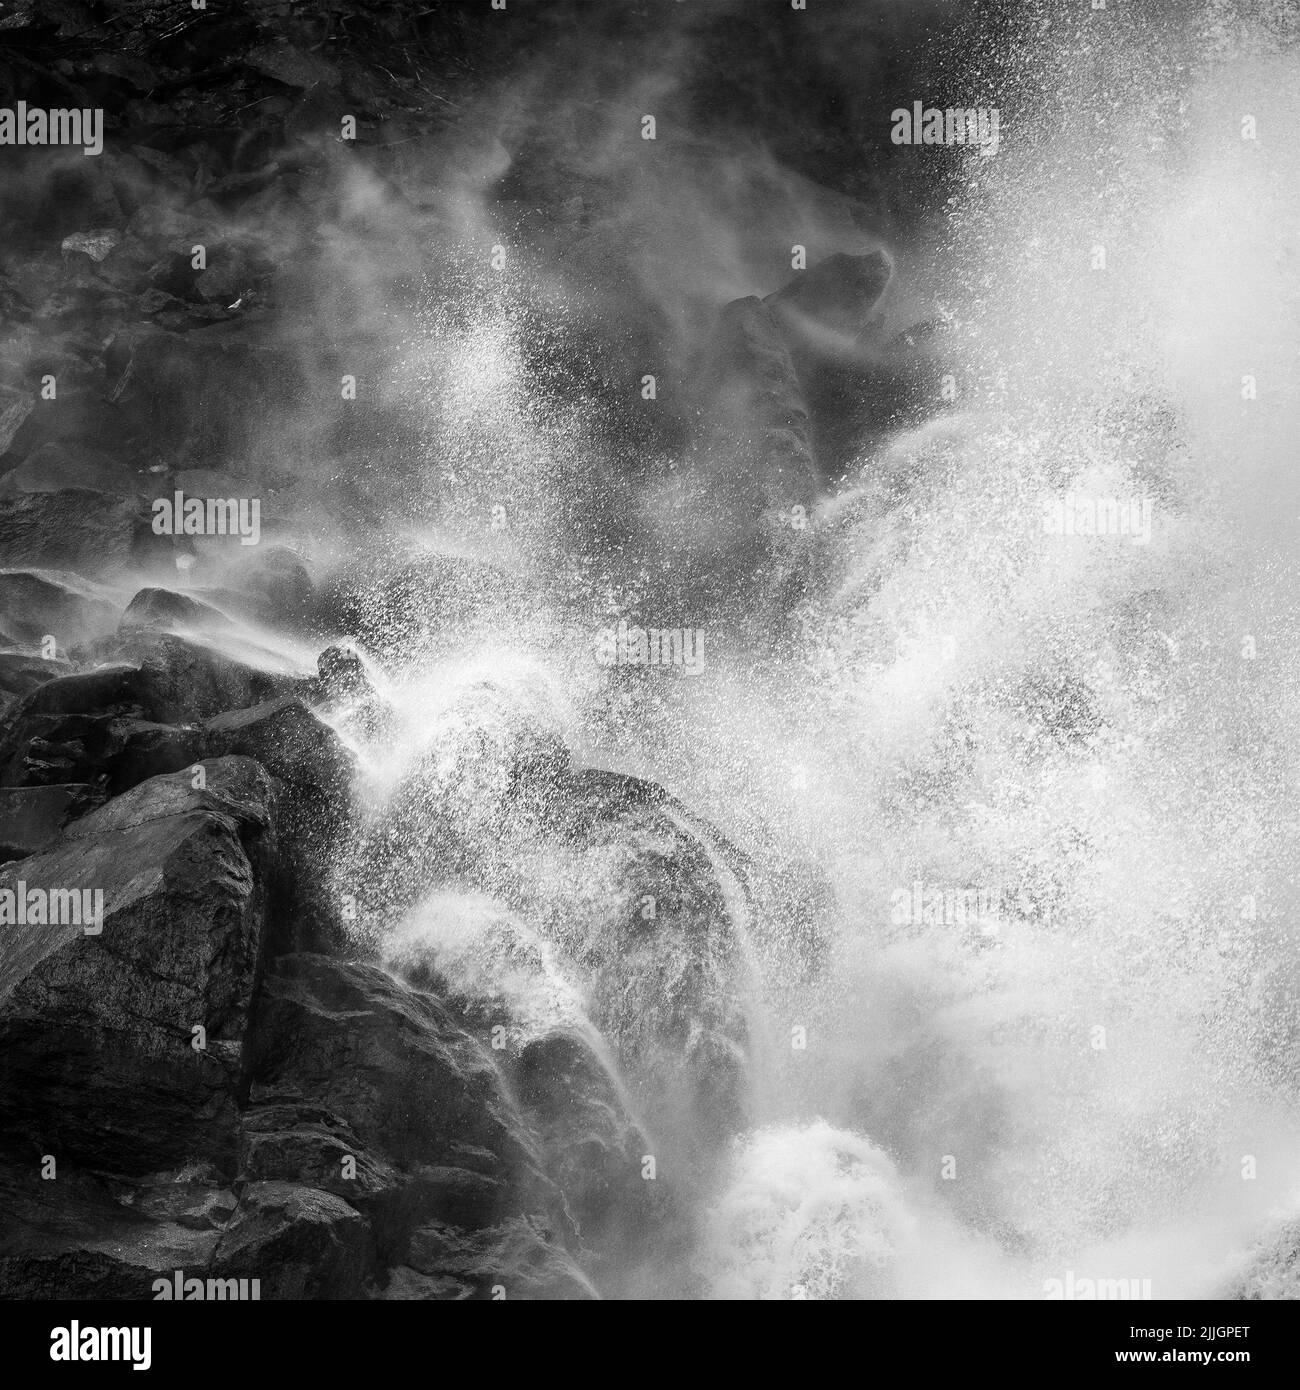 Eaux mobiles des cascades de Krimml (Krimmler Wasserfälle). Rochers et eau. Alpes autrichiennes. Europe. Beaux-arts noir et blanc. Banque D'Images